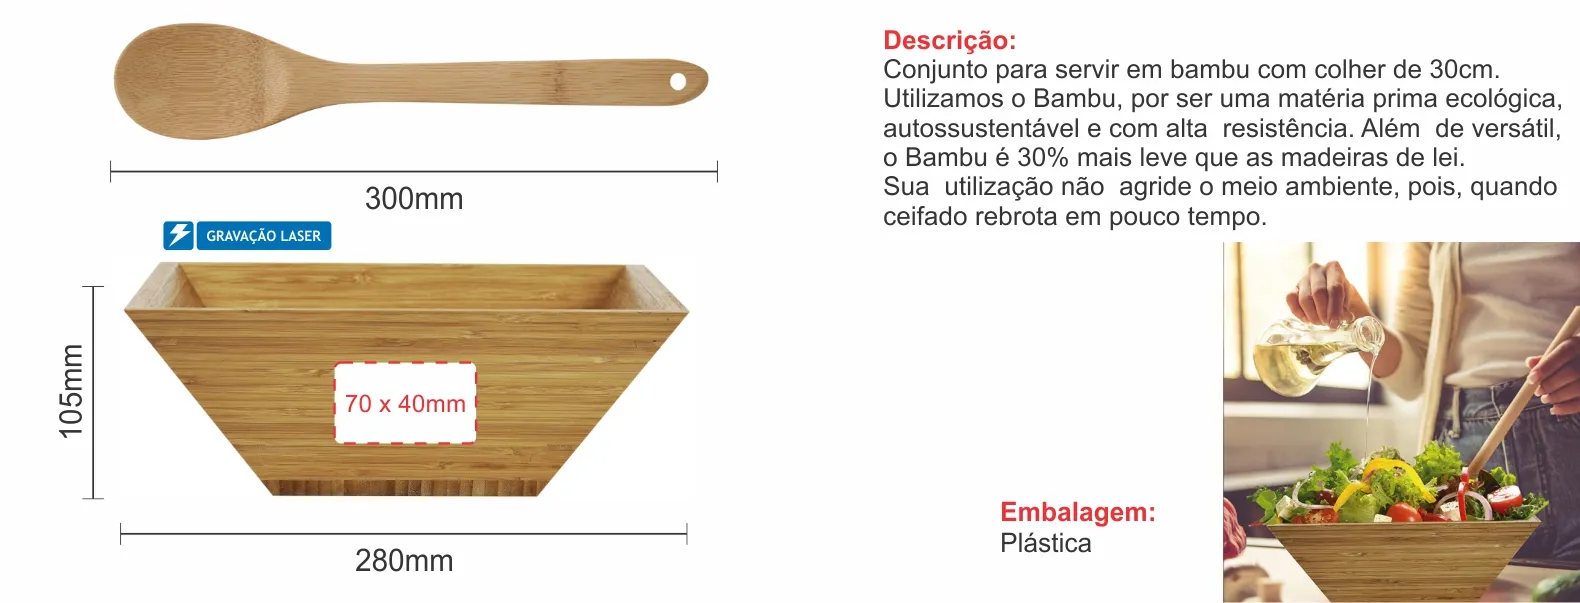 Conjunto para servir em bambu com colher de 30cm.